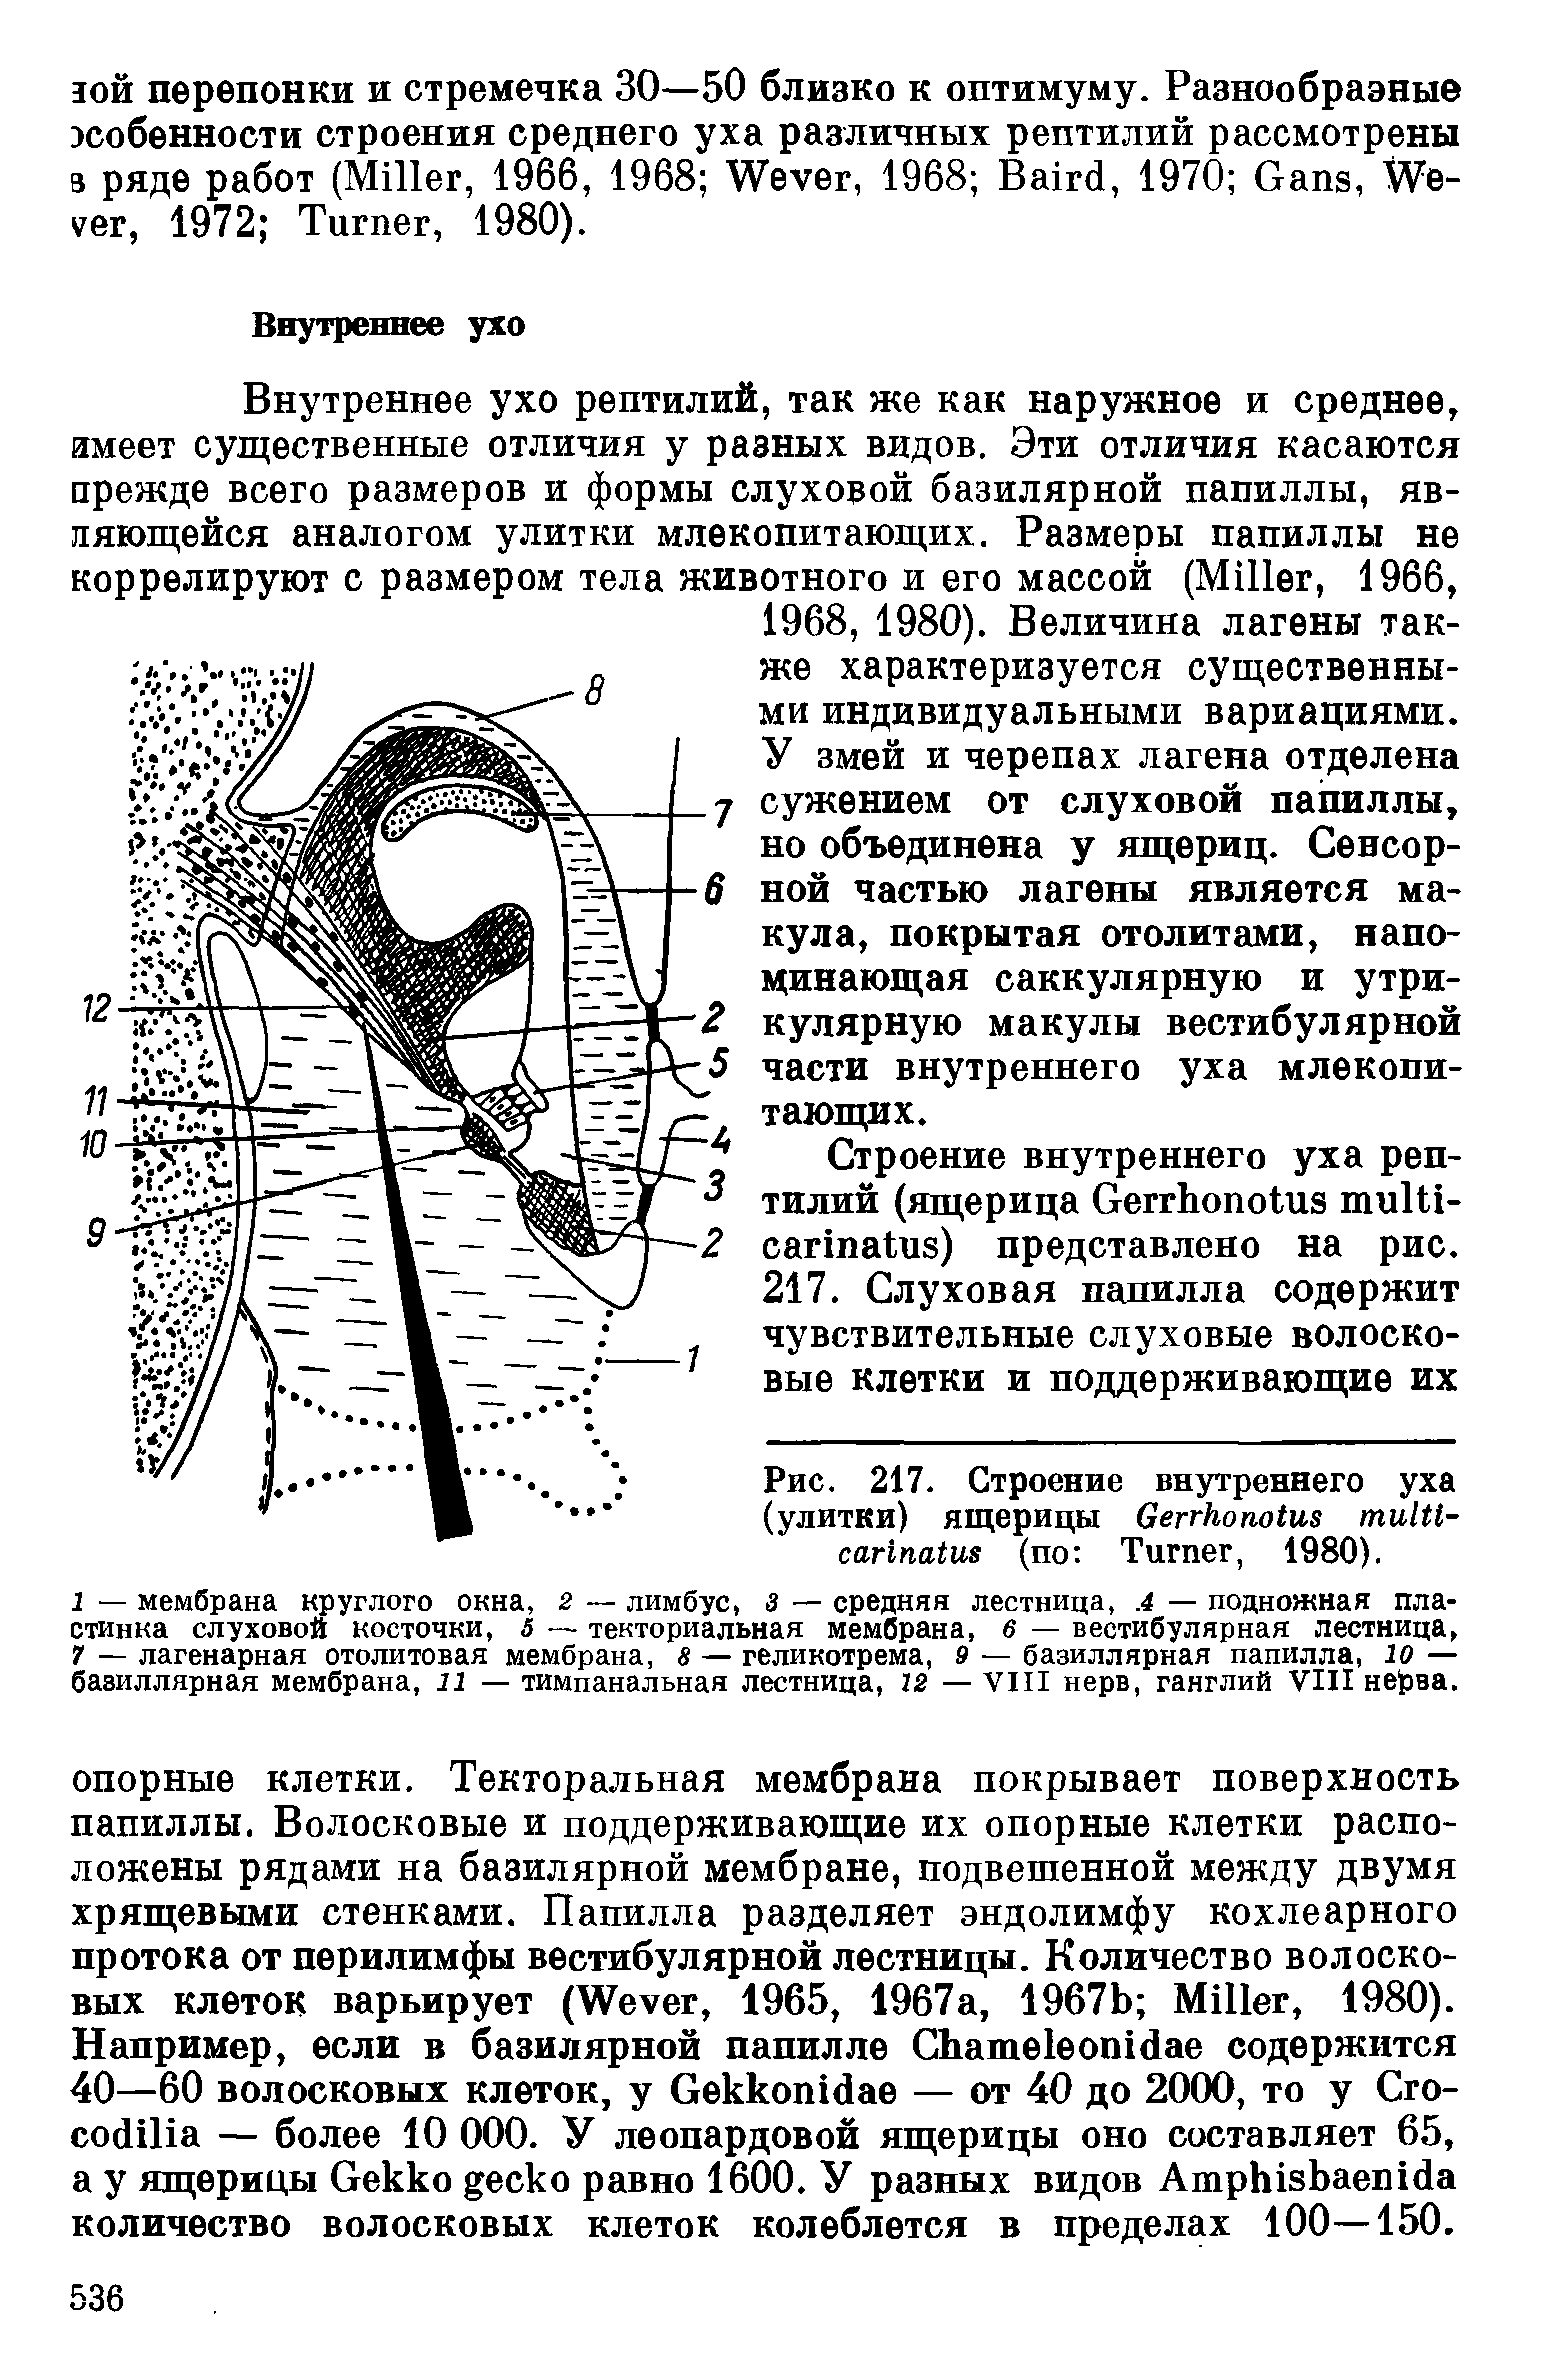 Рис. 217. Строение внутреннего уха (улитки) ящерицы G - (по T , 1980).